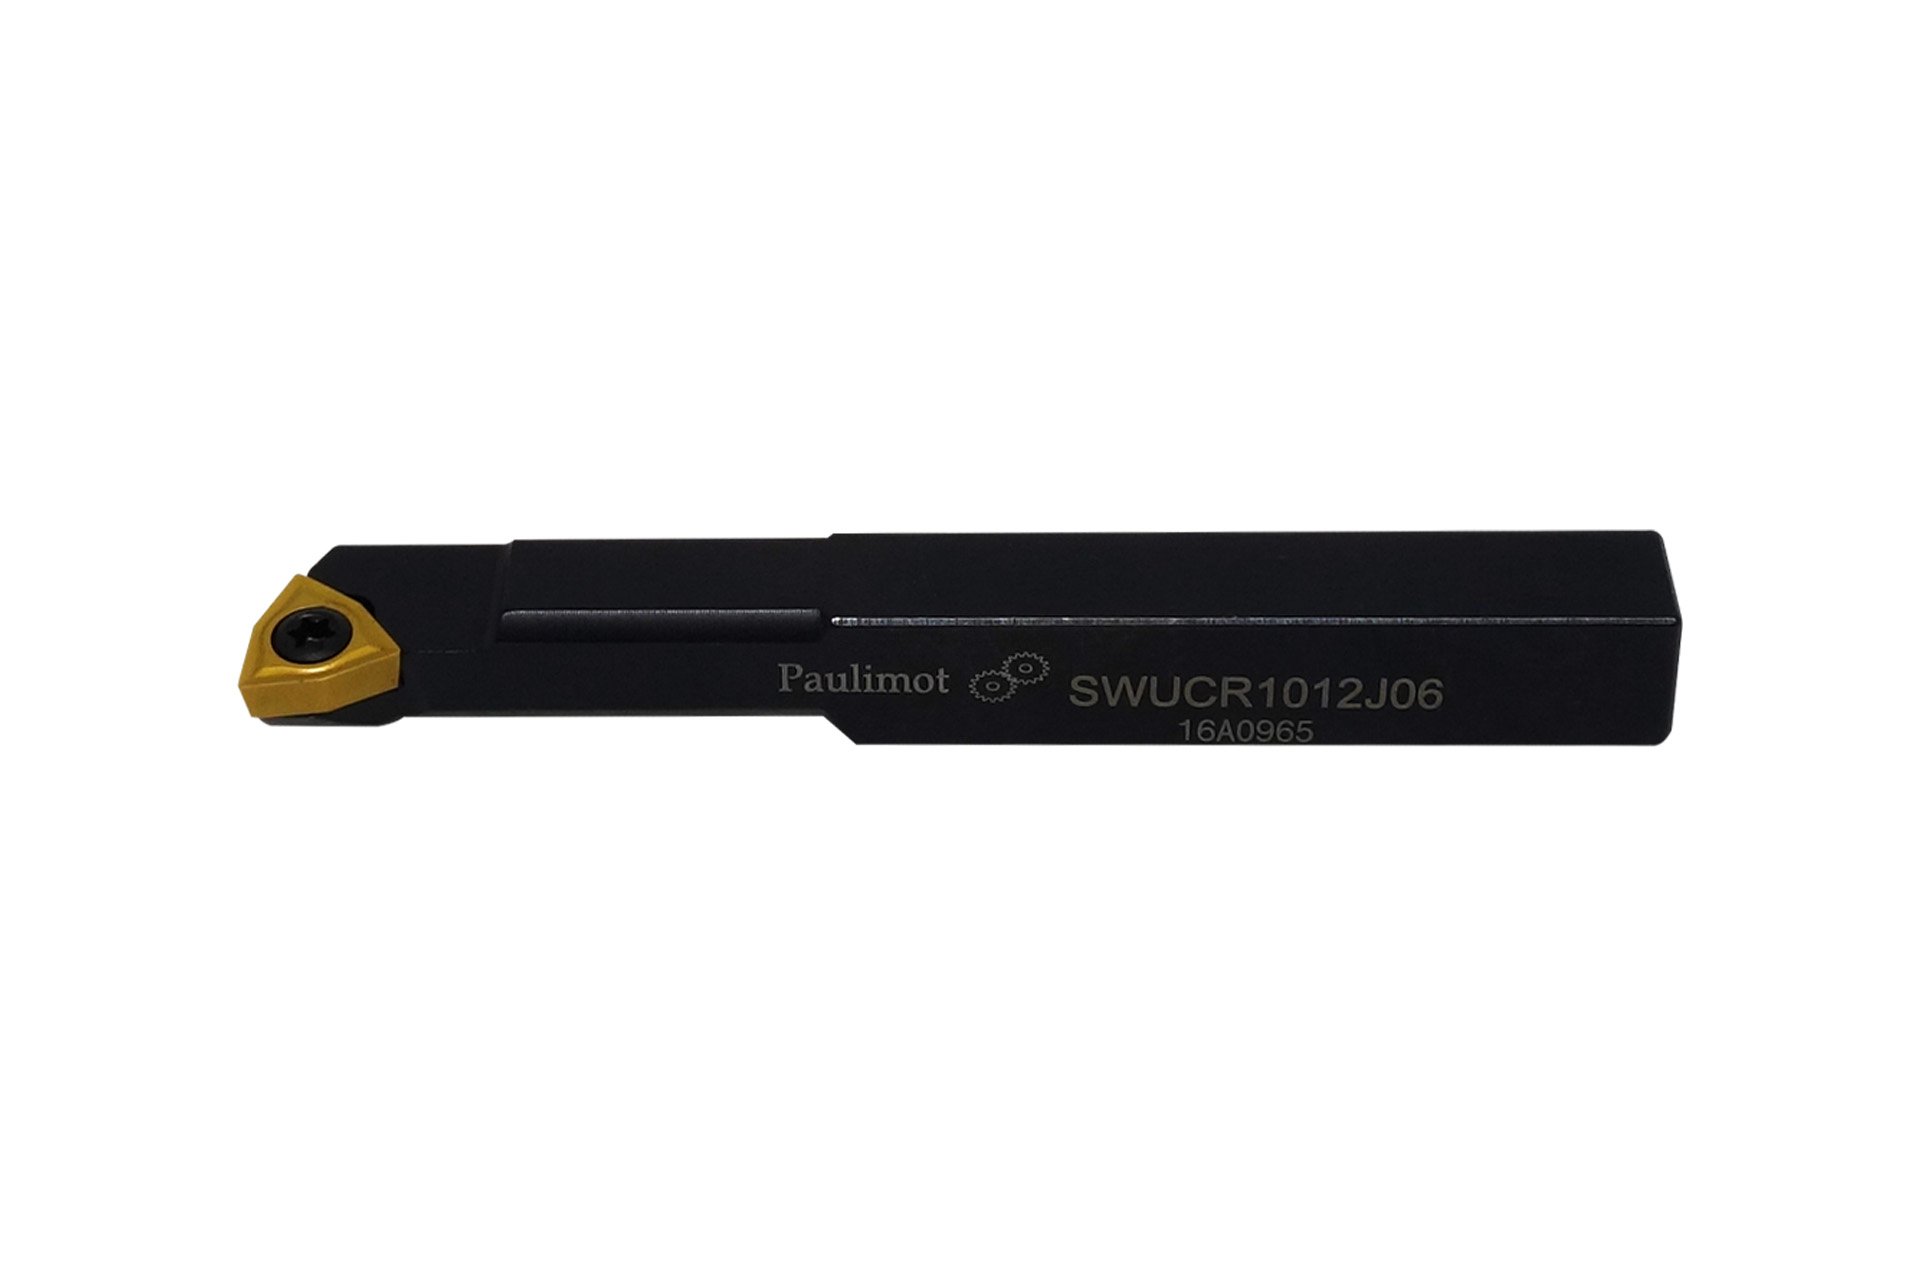 Drehmeißel mit Schneidplatte 13 x 12 mm SWUCR1012J06